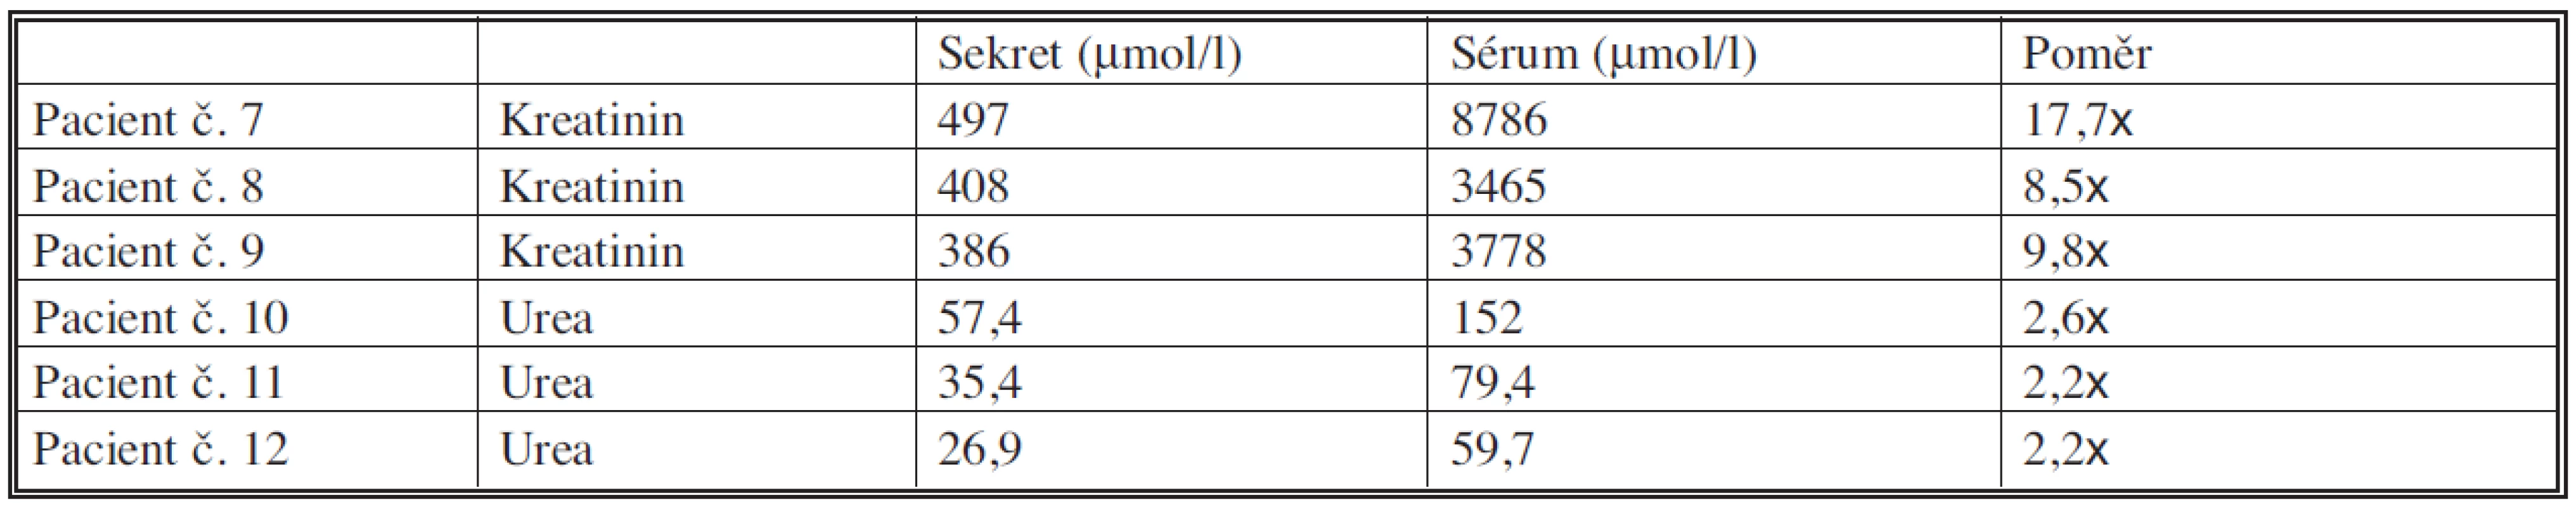 Srovnání hladin kreatininu a urey u pacientů s nejvyššími hladinami kreatininu a urey v séru
Tab. 6. Comparation of the creatinine a urea levels in patients with the highest creatinine and urea levels in serum